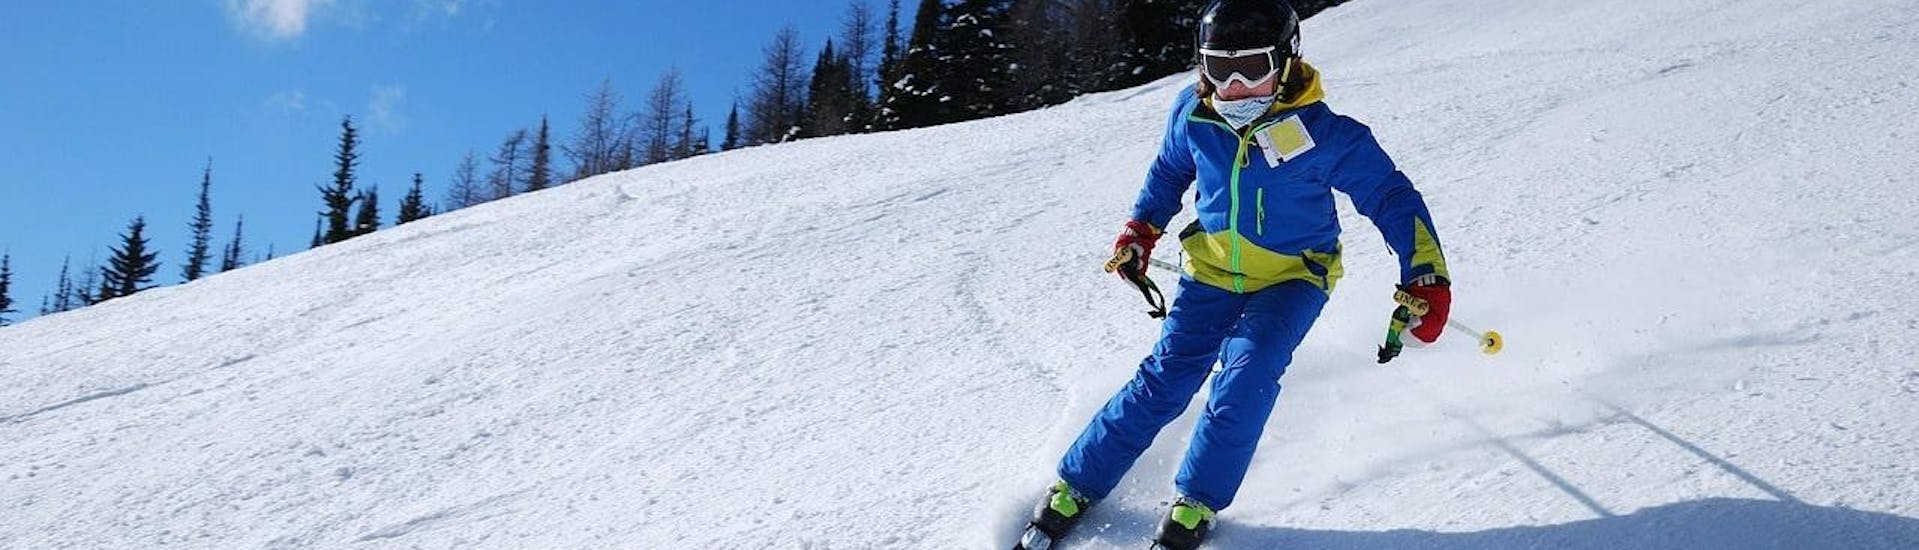 Lezioni private di sci per bambini per tutti i livelli.